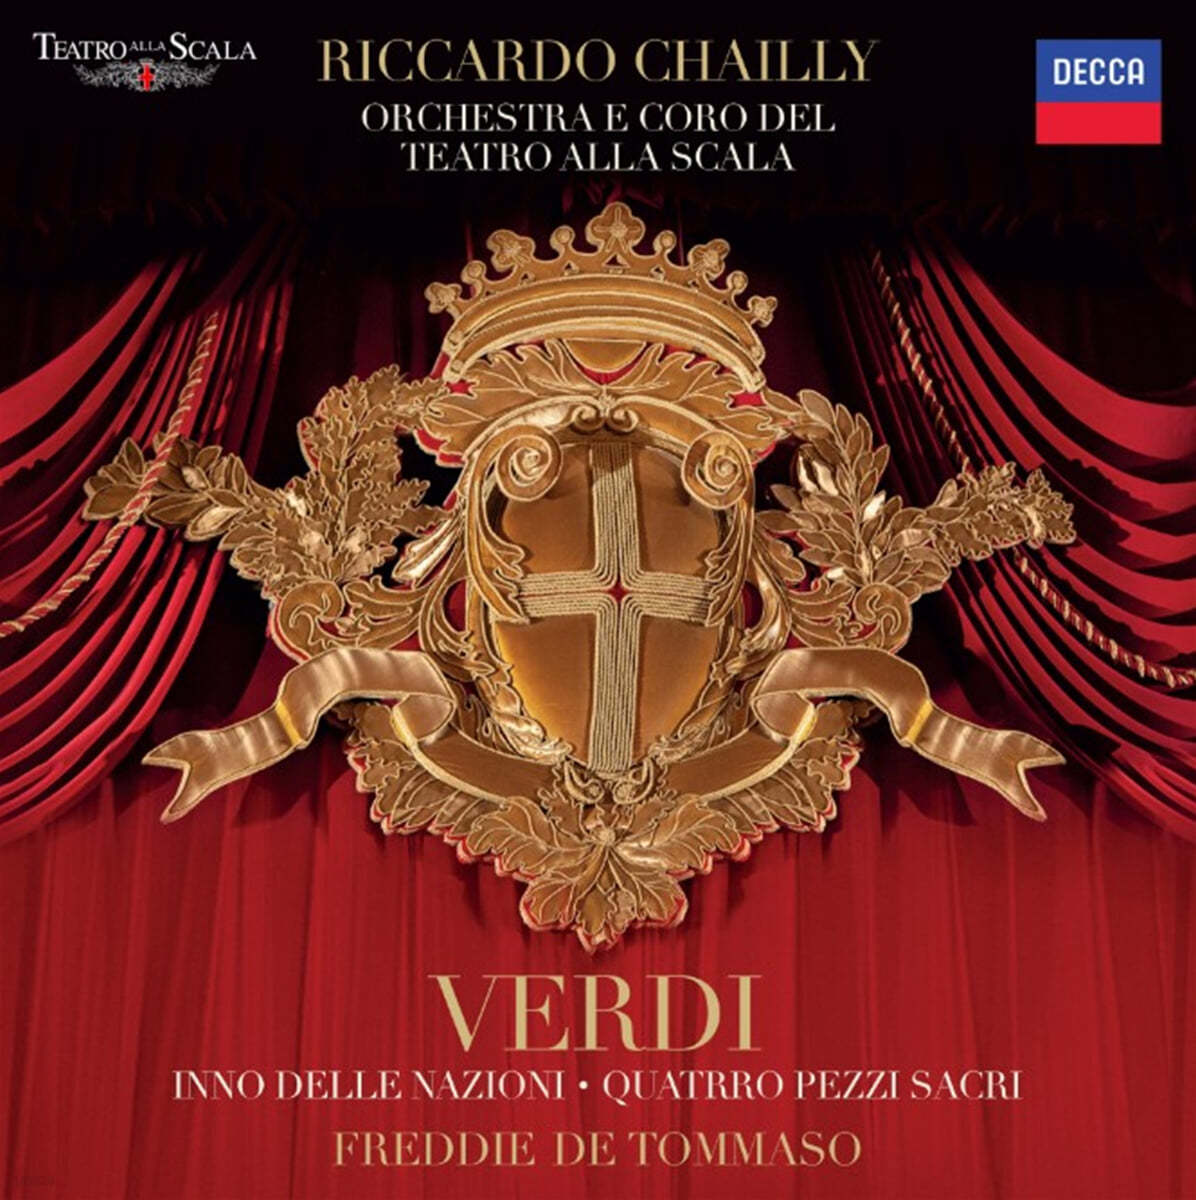 Riccardo Chailly 베르디: 국가들의 찬가, 4개의 성가 (Verdi: Inno Delle Nazioni Quatro Pezzi Sacri)